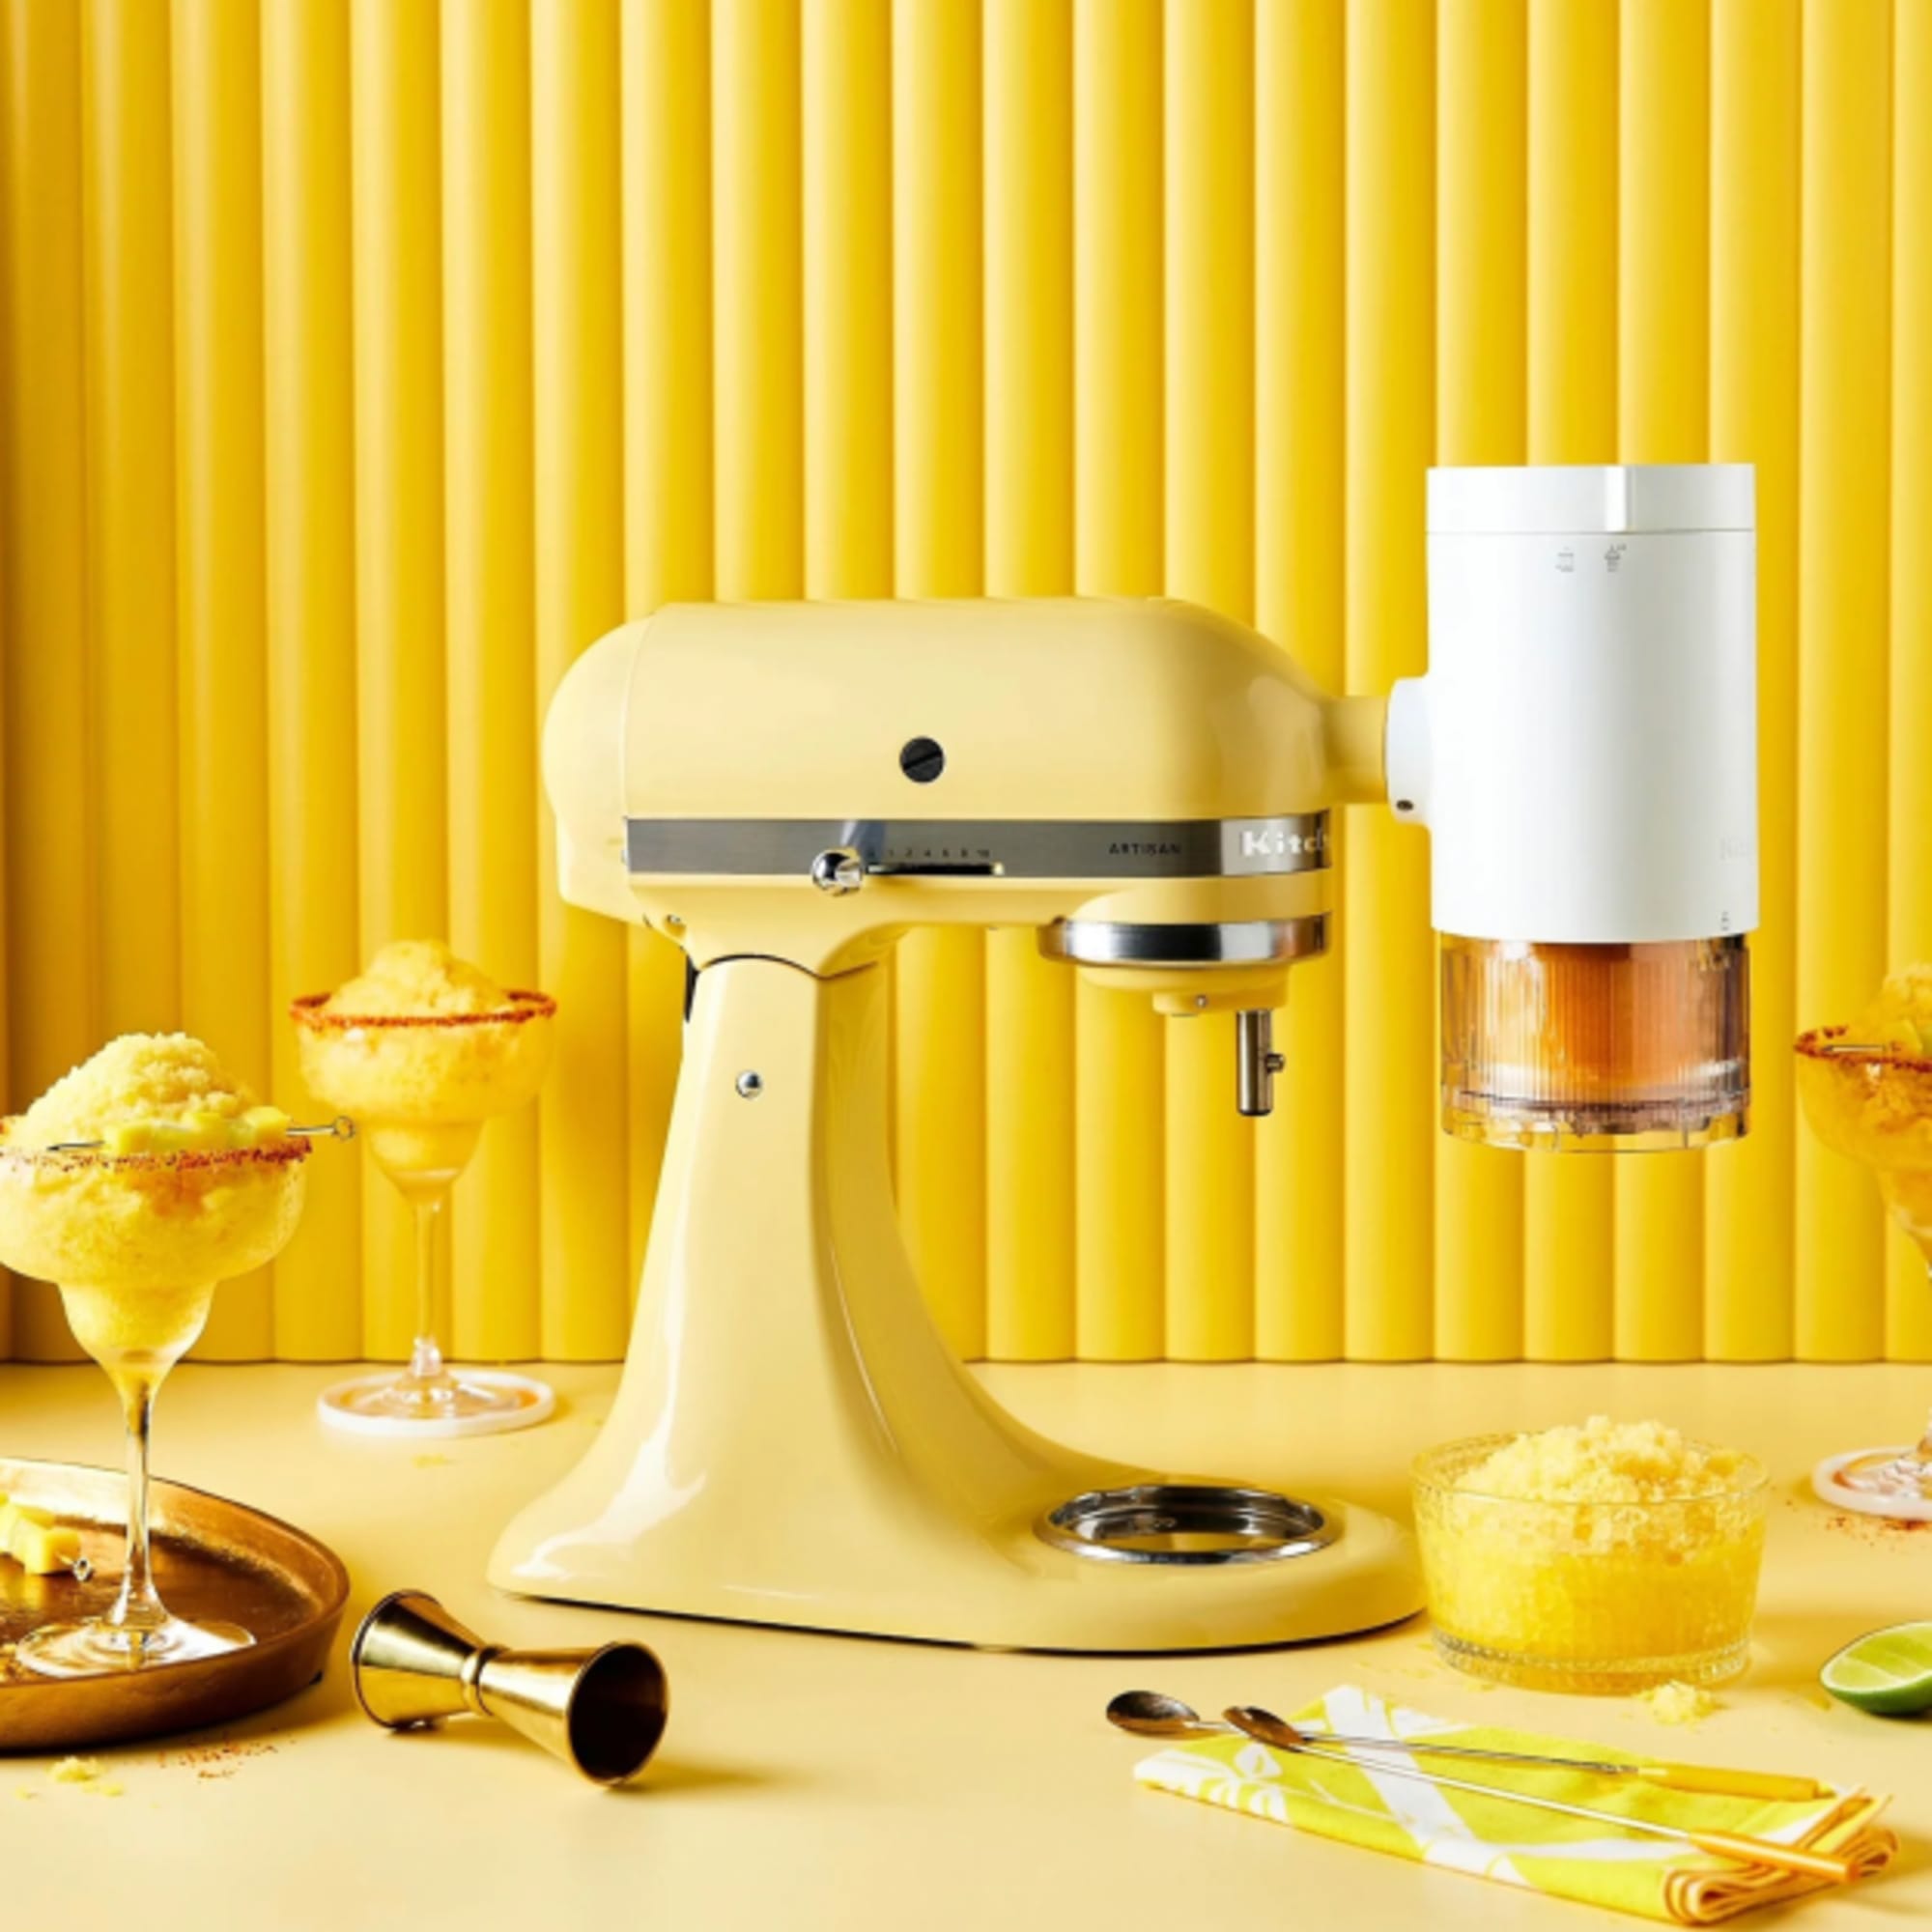 KitchenAid Artisan KSM195 Stand Mixer Majestic Yellow